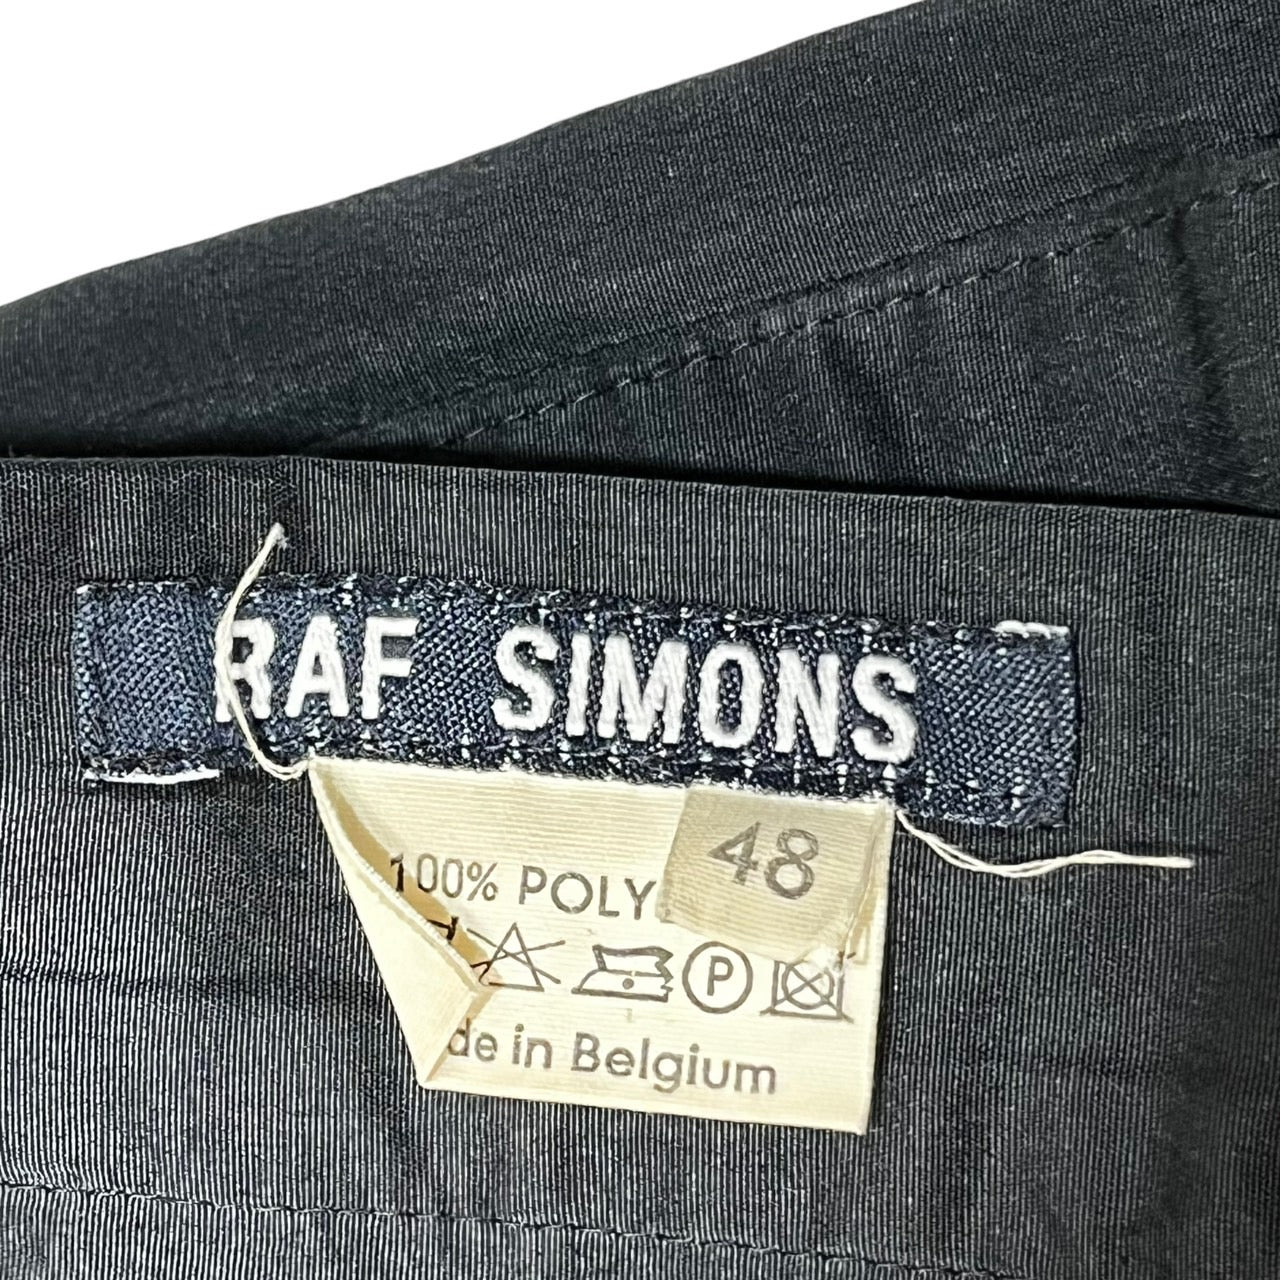 RAF SIMONS(ラフシモンズ) 90's 初期紺タグ polyester slacks/ポリエステルスラックス/稀少/90年代/ヴィンテージ  SIZE 48(M) ブラック